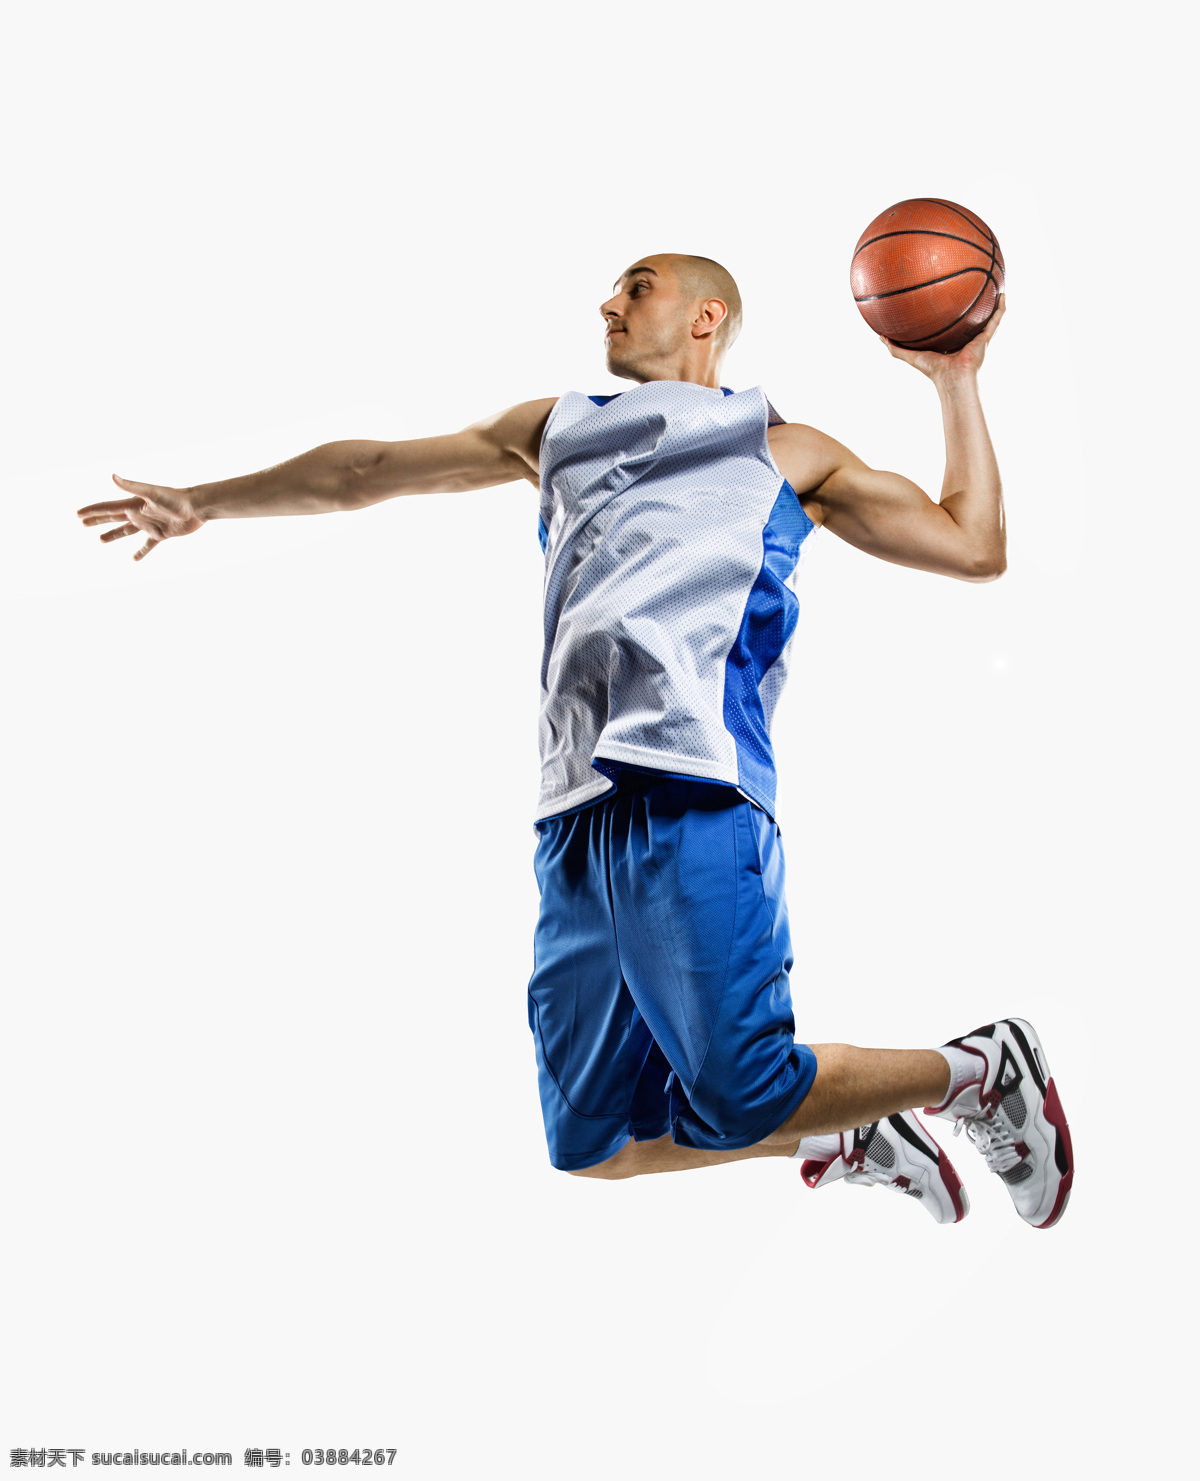 灌篮 篮球手 篮球运动员 灌篮高手 扣篮 暴扣 打篮球 篮球 篮球运动 体育运动 文化艺术